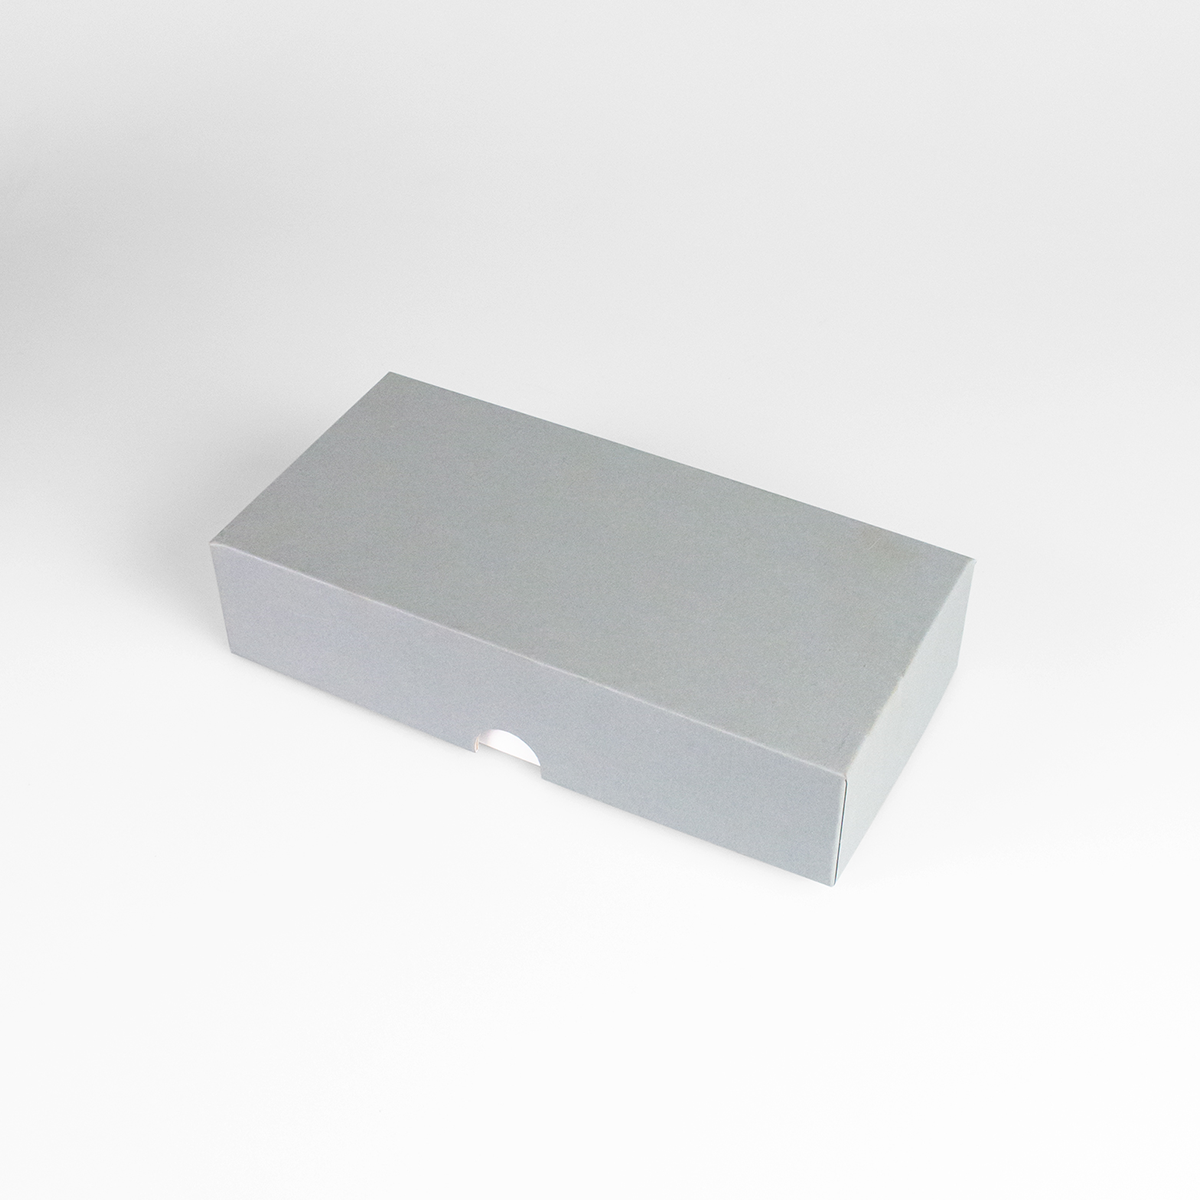 Подарочная коробка крышка-дно, 21.5 x 10.5 x 5 см. "Радуга", серый, белый